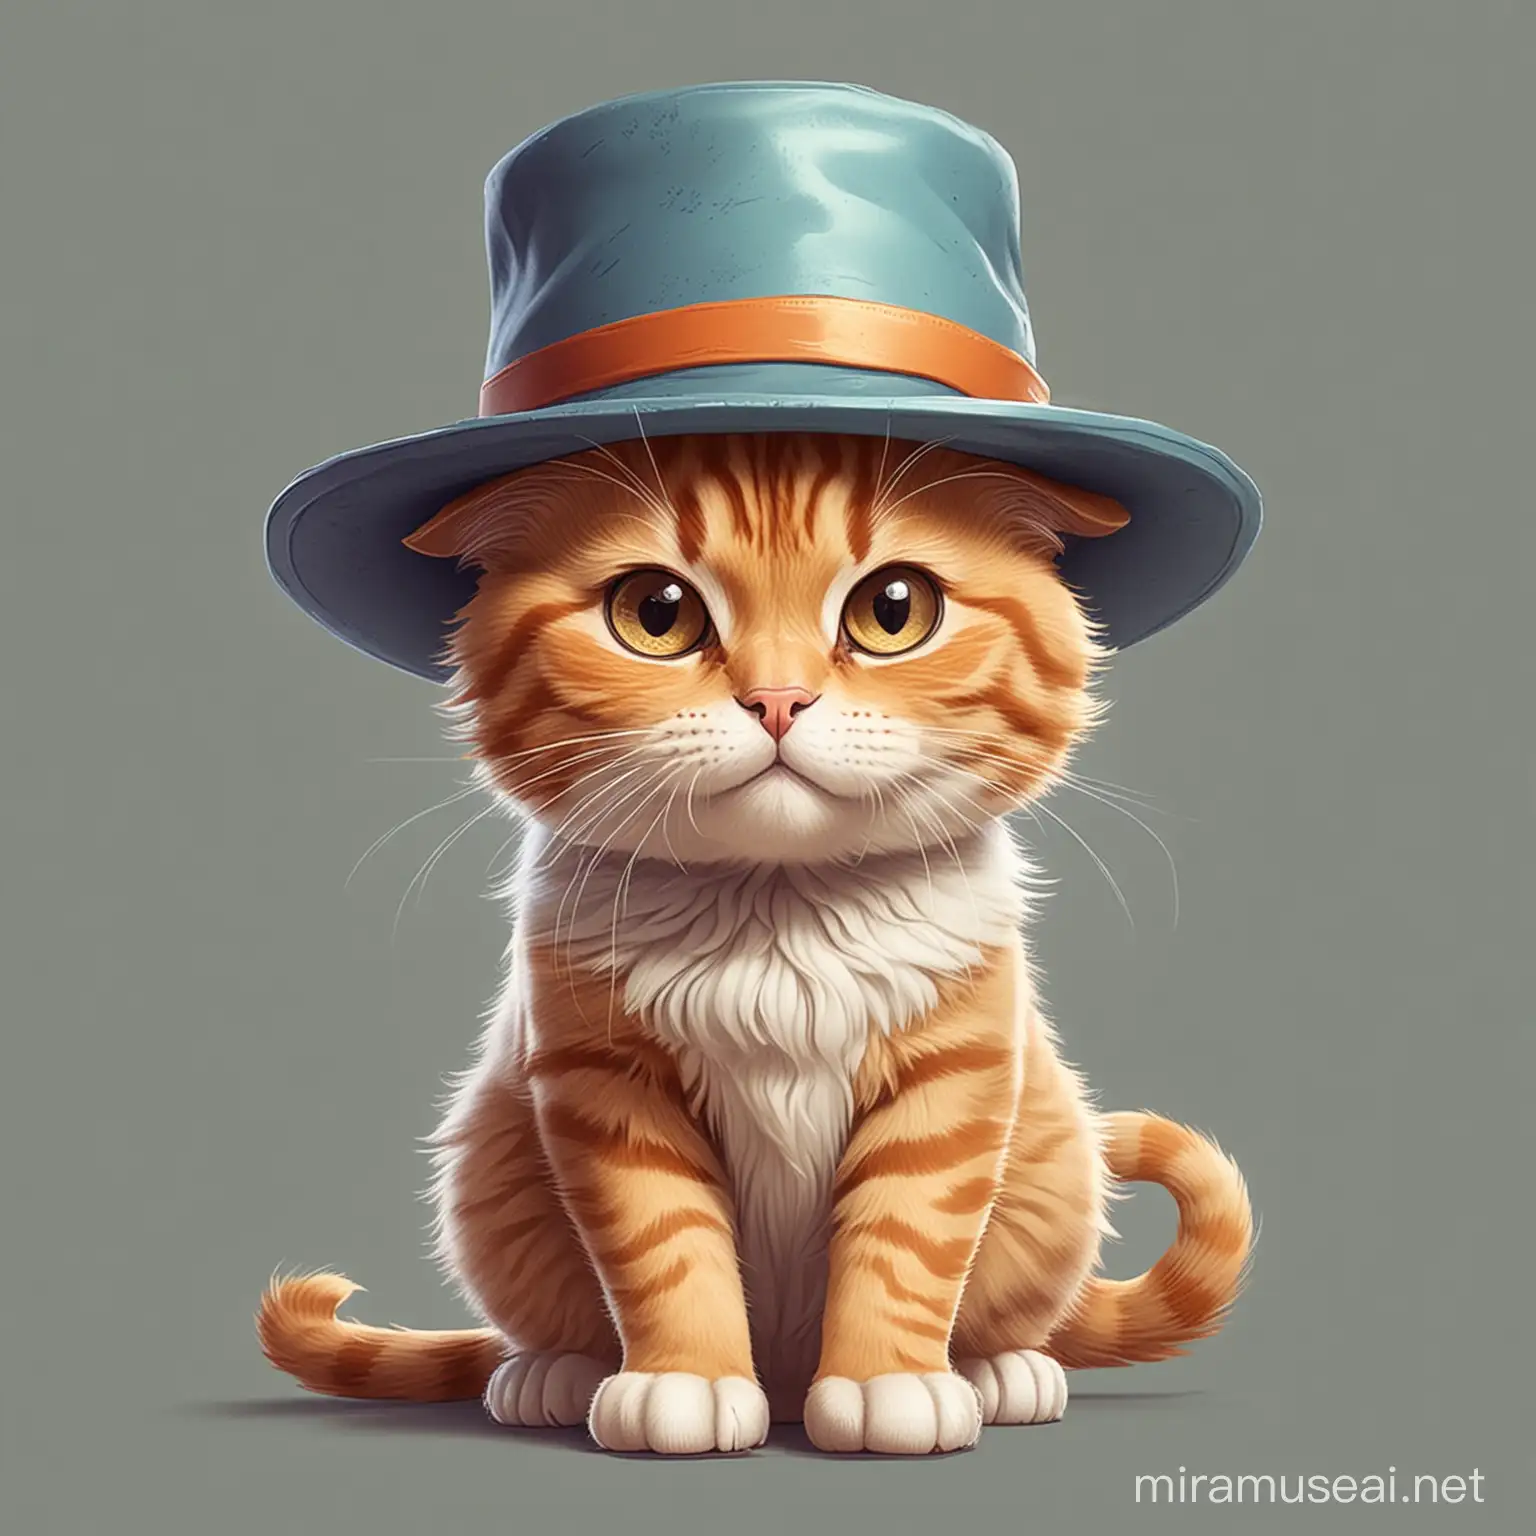 cat wearing a hat, cartoon style